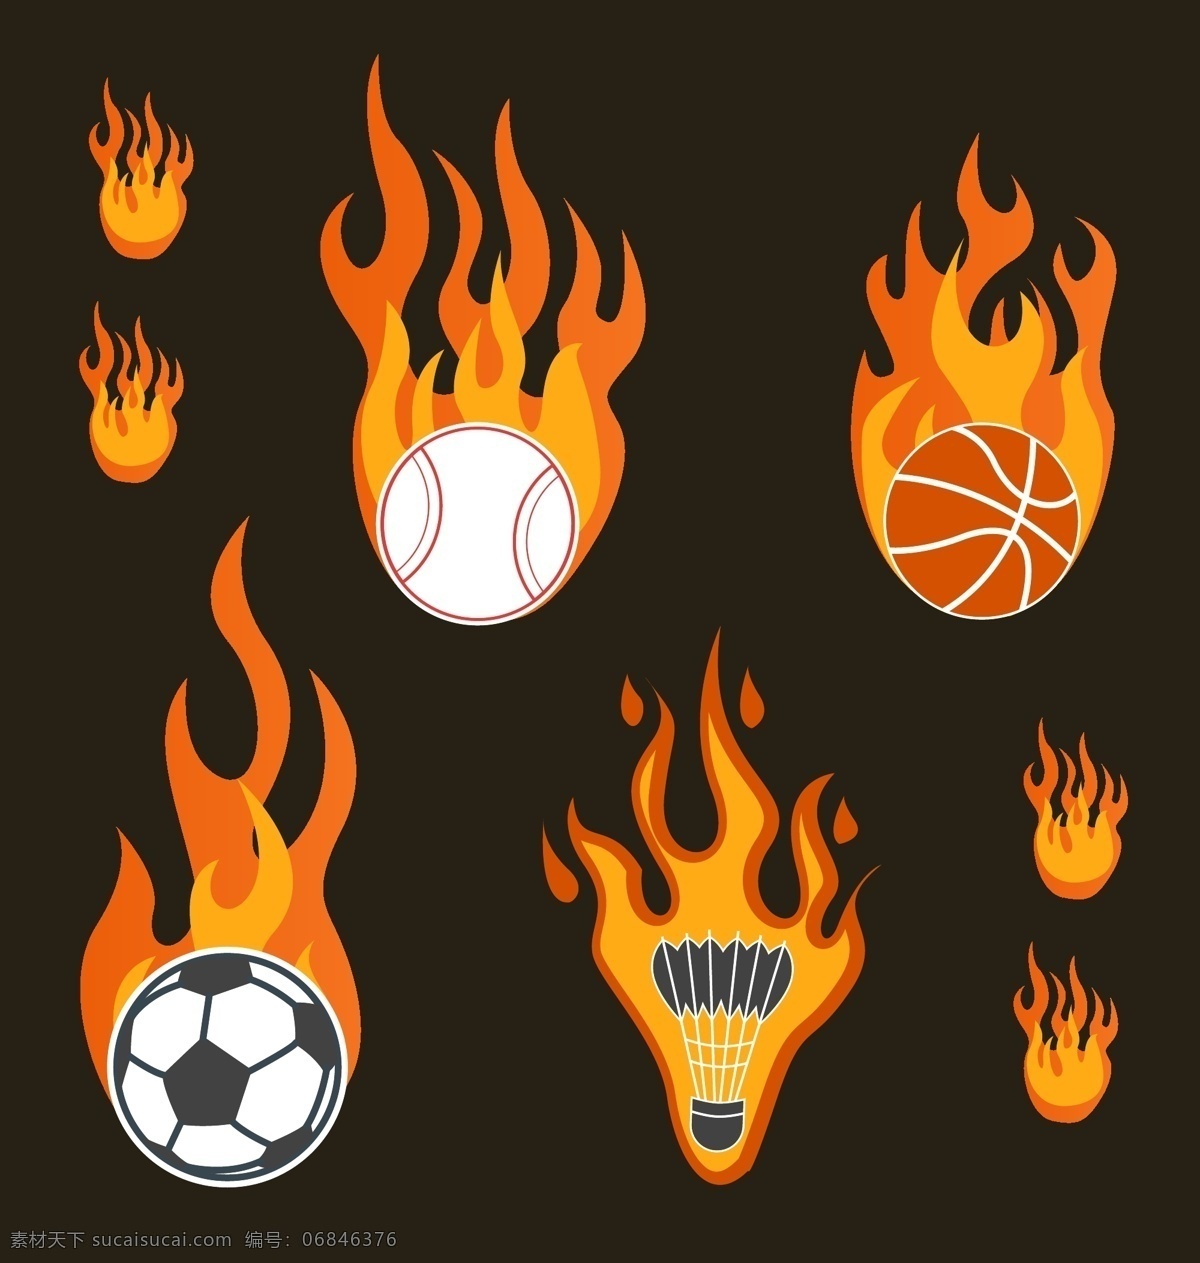 体育工具图标 体育工具 图标 图标设计 火焰 火 点燃 体育 符号 运动